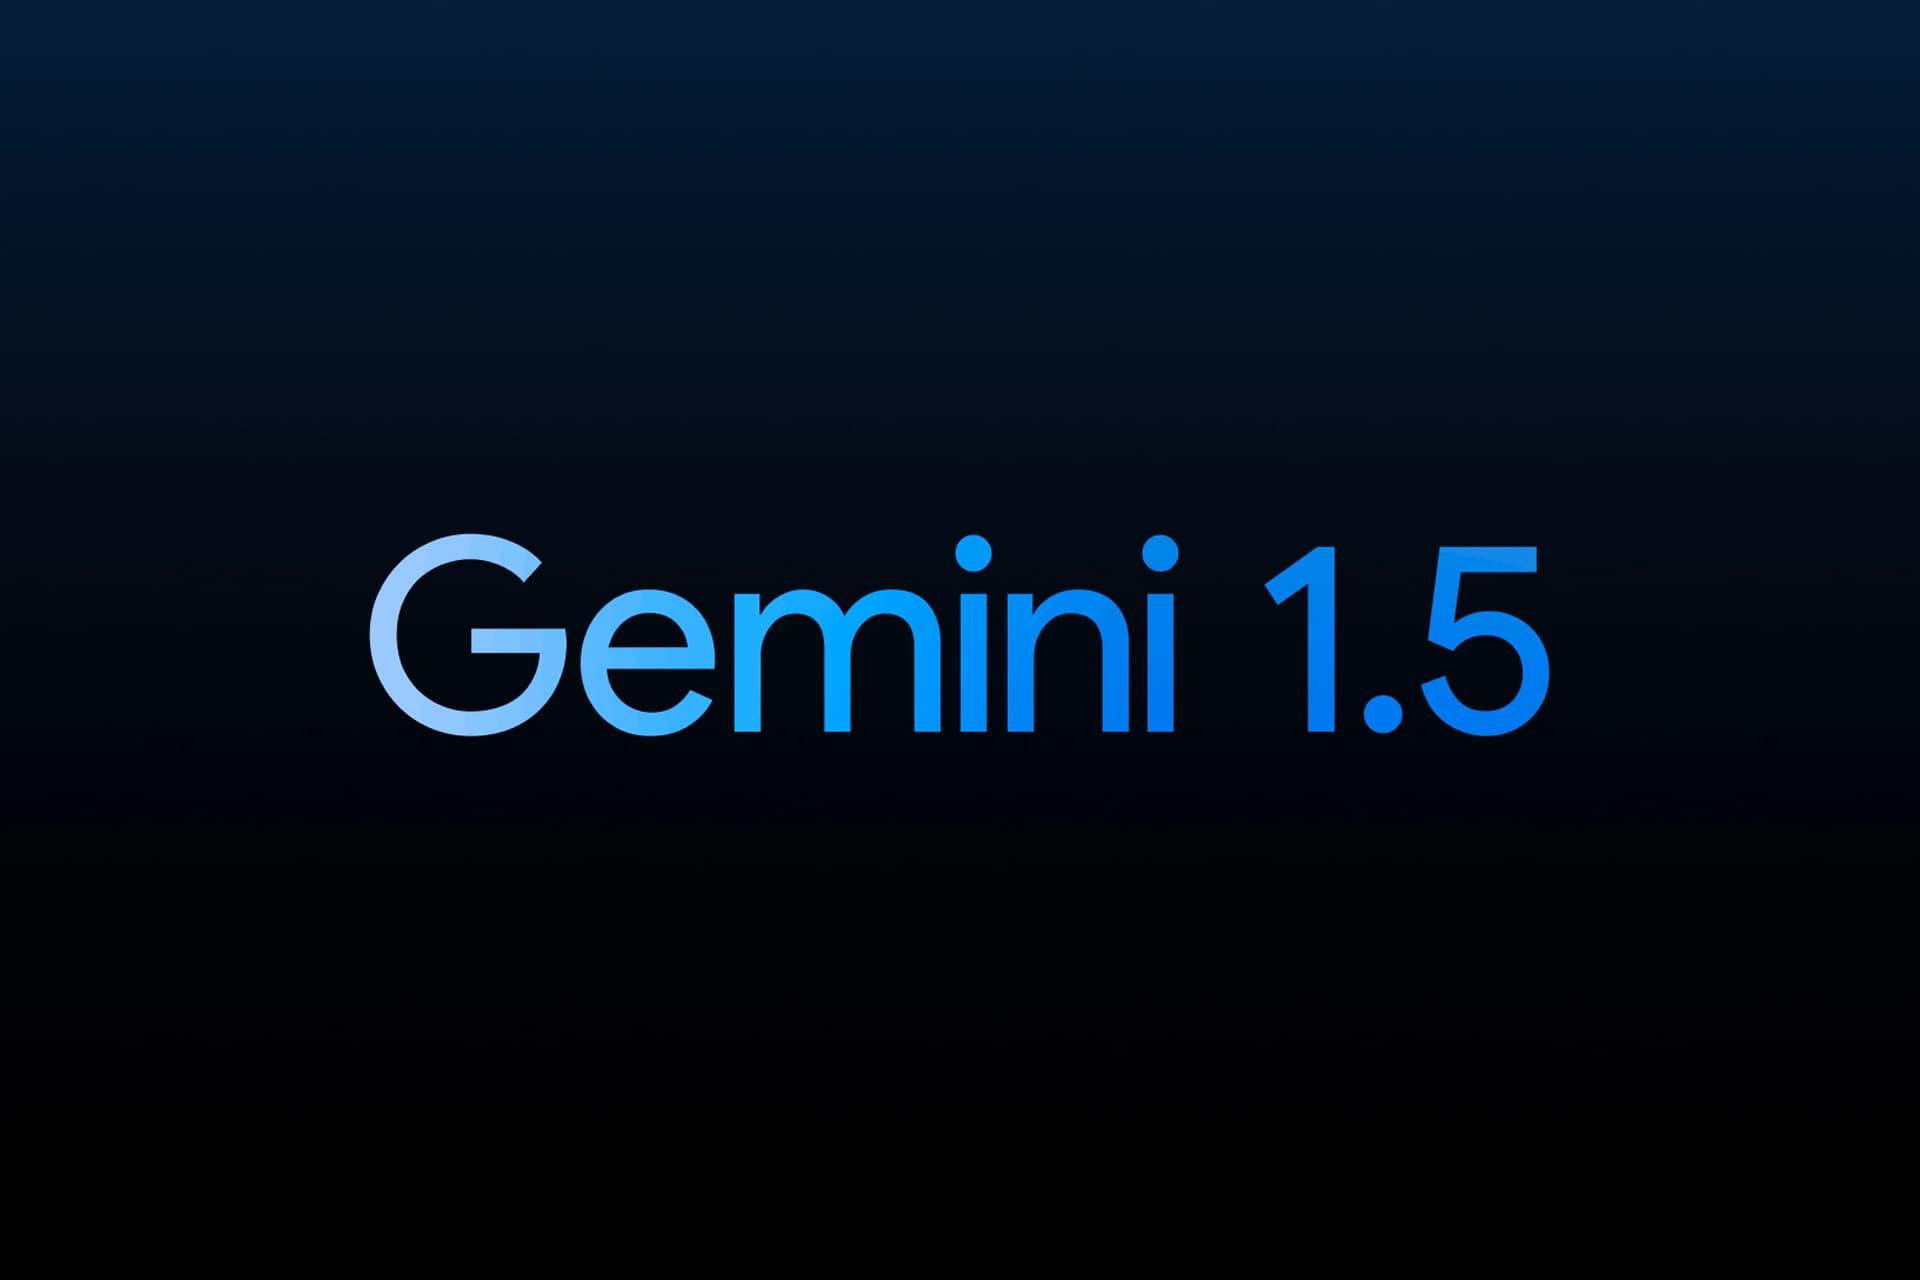 مرجع متخصصين ايران لوگو جمناي 1.5 گوگل / Google Gemini 1.5